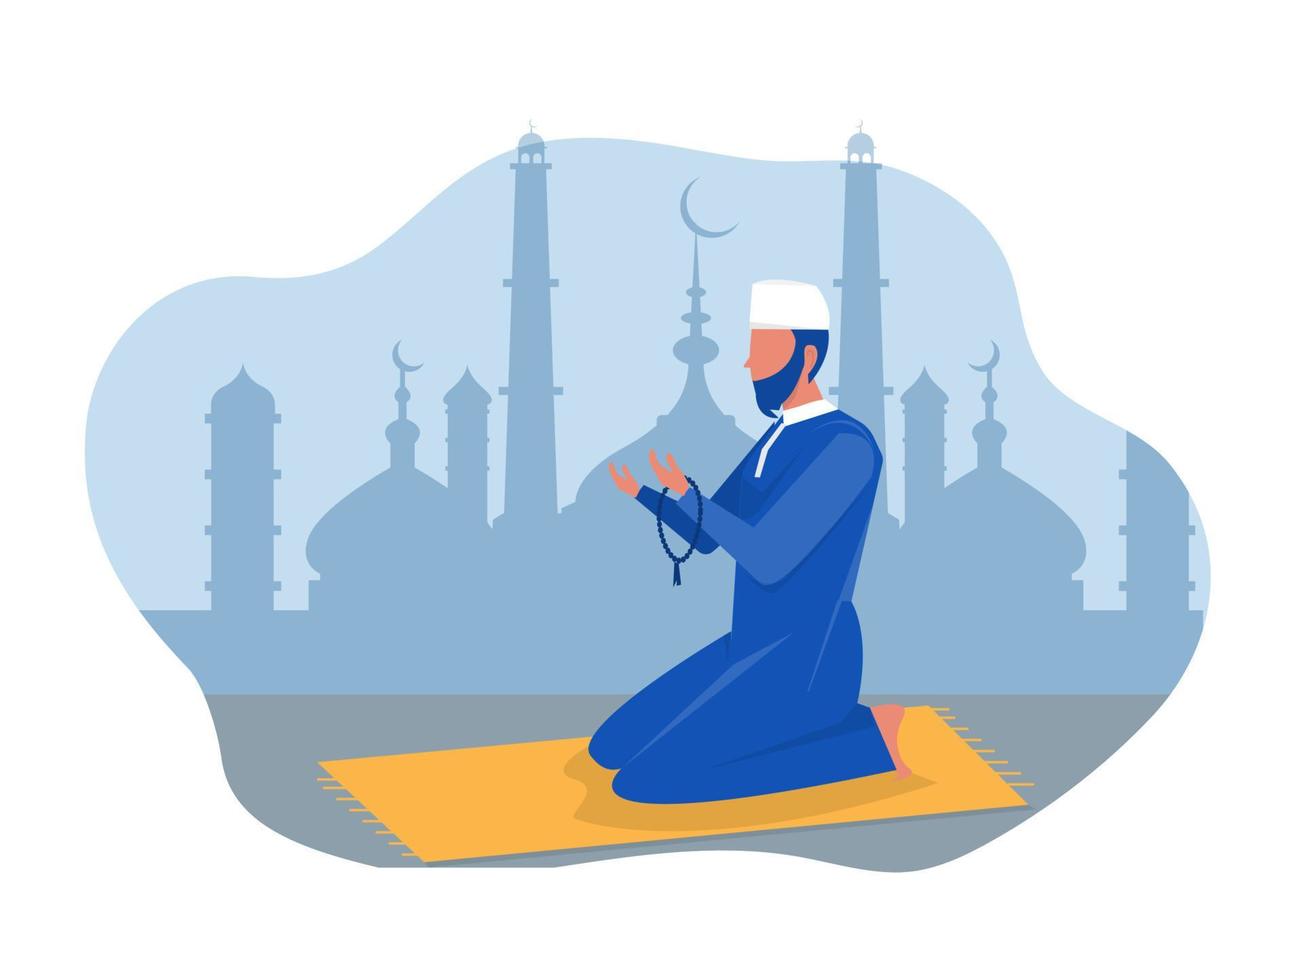 homme religieux prière musulmane en vêtements traditionnels illustration vectorielle verticale pleine longueur dans les graphiques vectoriels de fond de mosquée vecteur